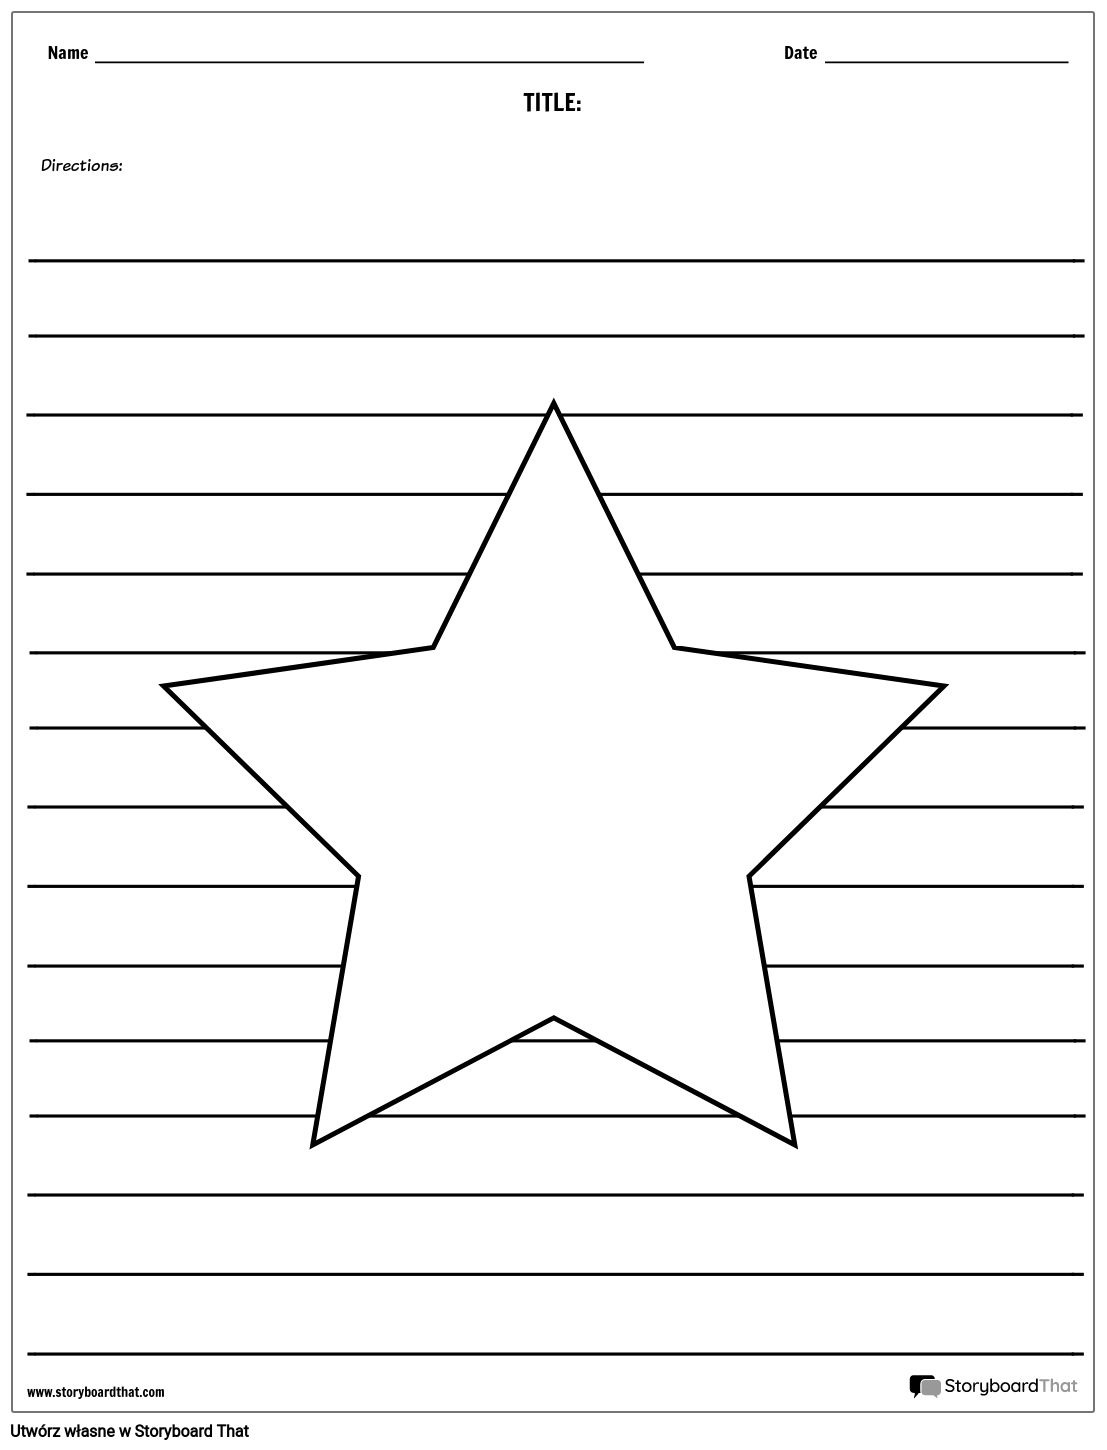 Gwiazda Ilustracja